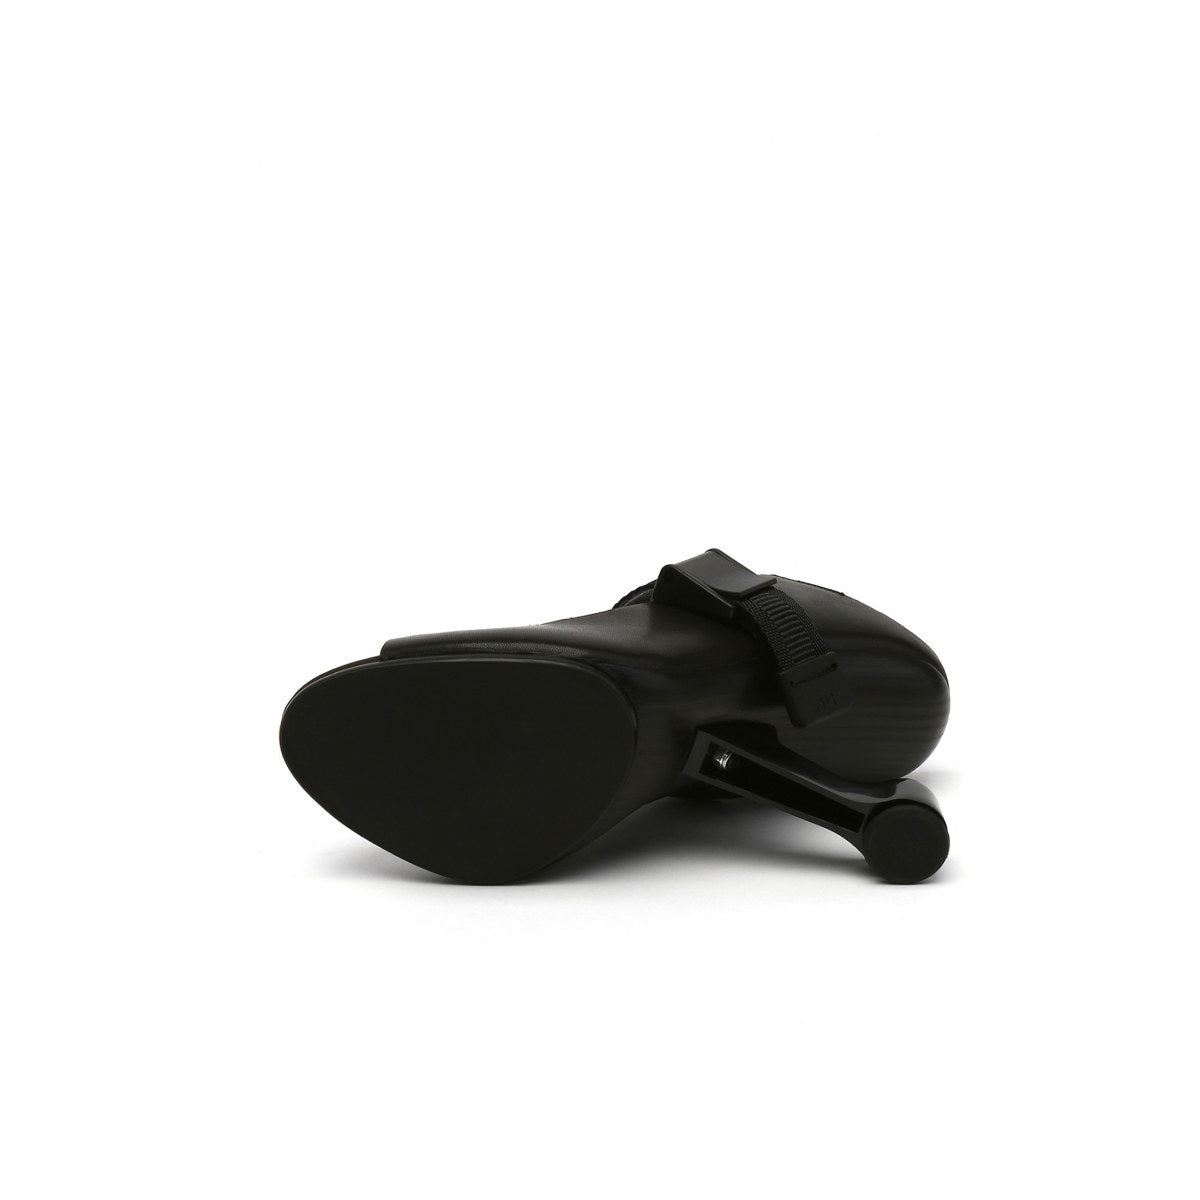 Open Toe Faux Leather Strip Accent Black Sandals